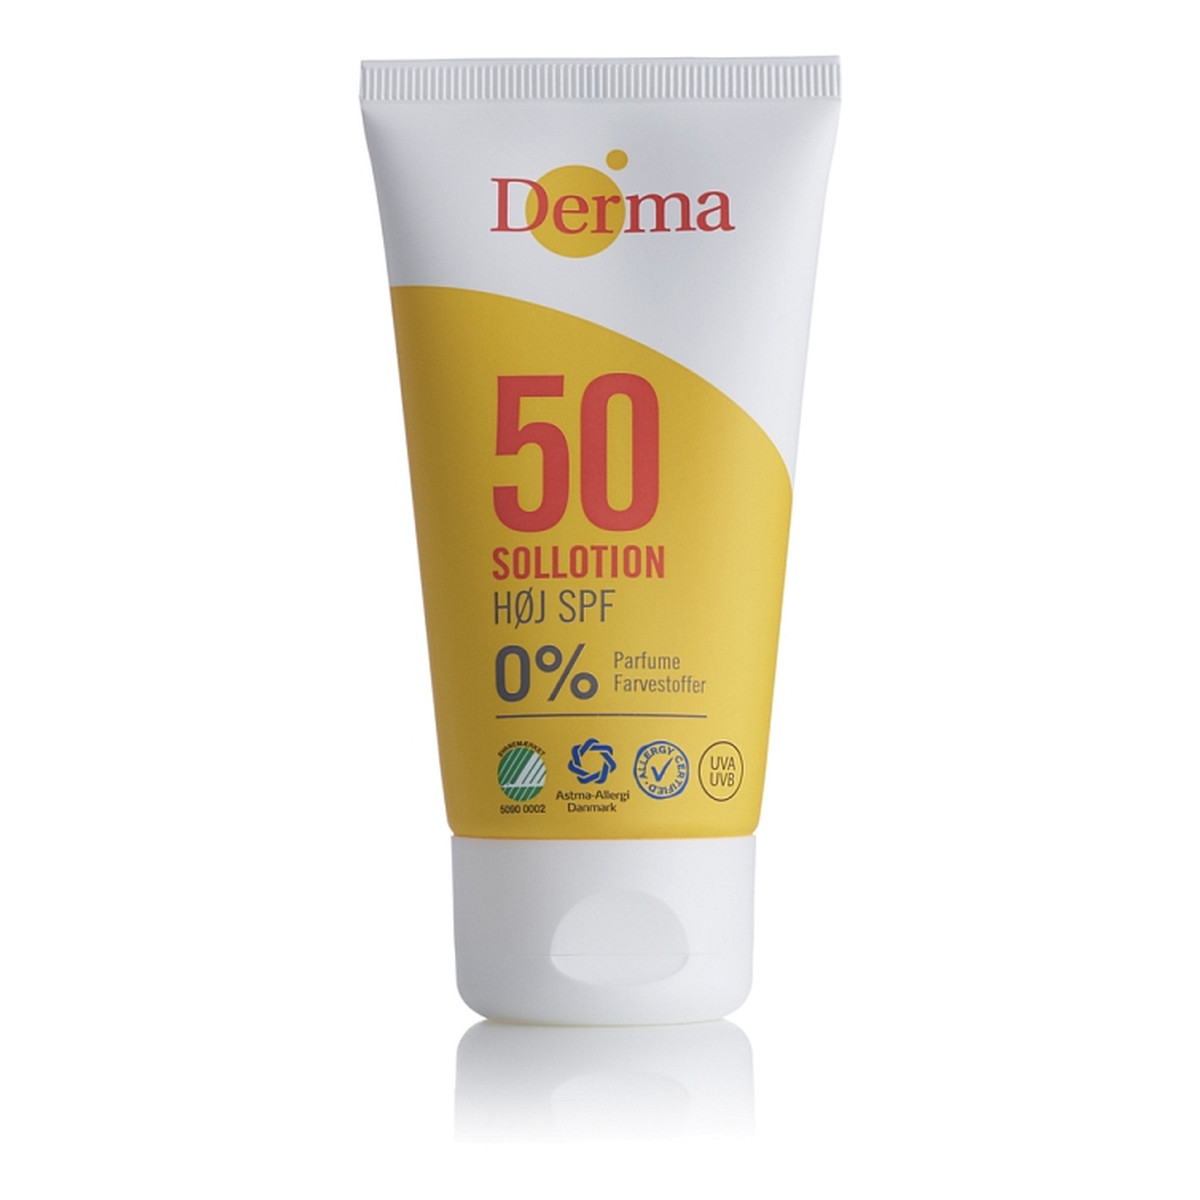 Derma Sun Lotion SPF50 balsam przeciwsłoneczny High 100ml